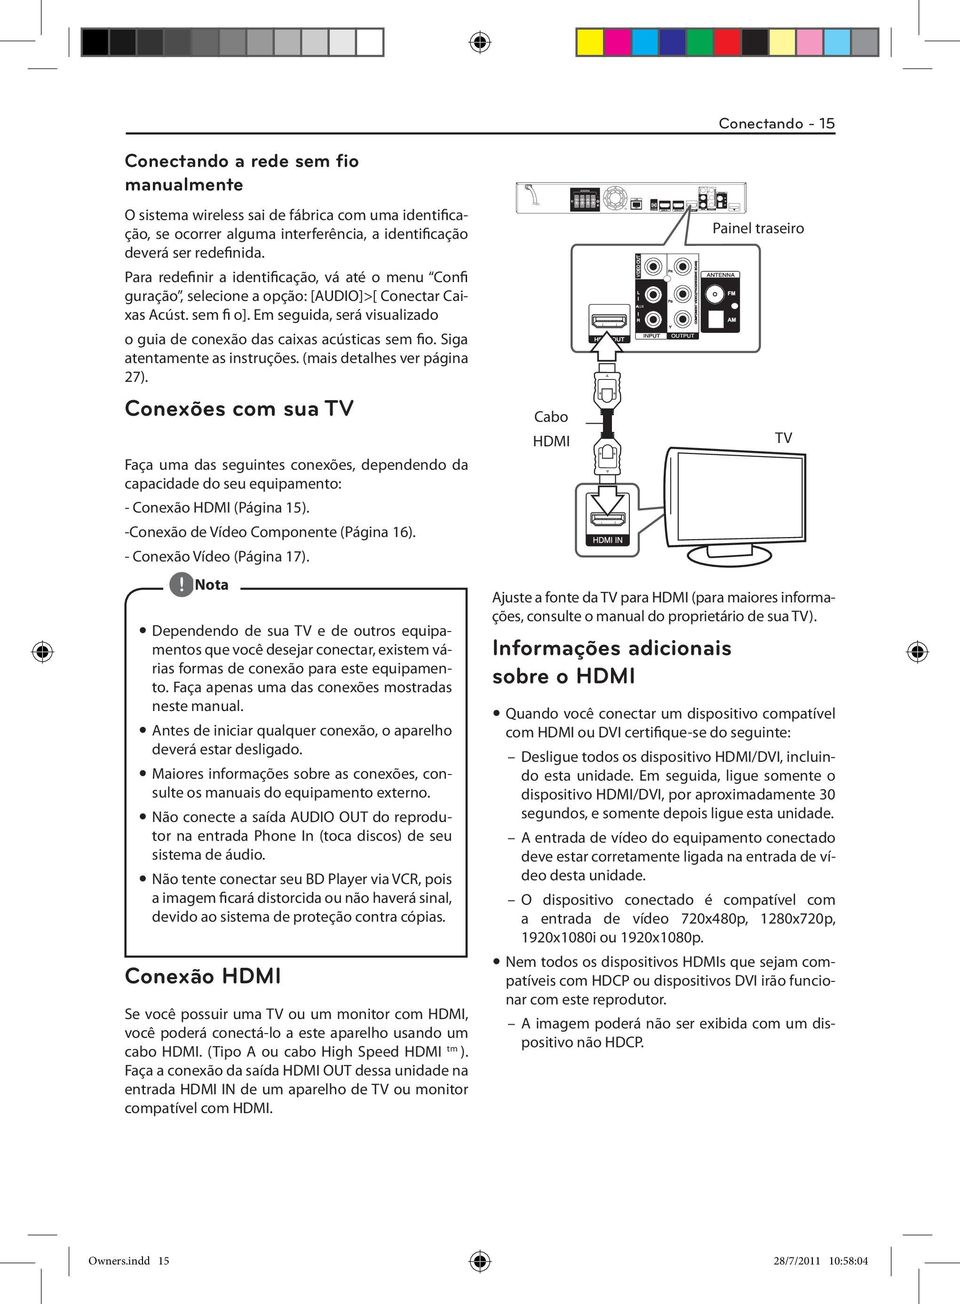 Siga atentamente as instruções. (mais detalhes ver página 27). Conexões com sua TV Faça uma das seguintes conexões, dependendo da capacidade do seu equipamento: - Conexão HDMI (Página 15).